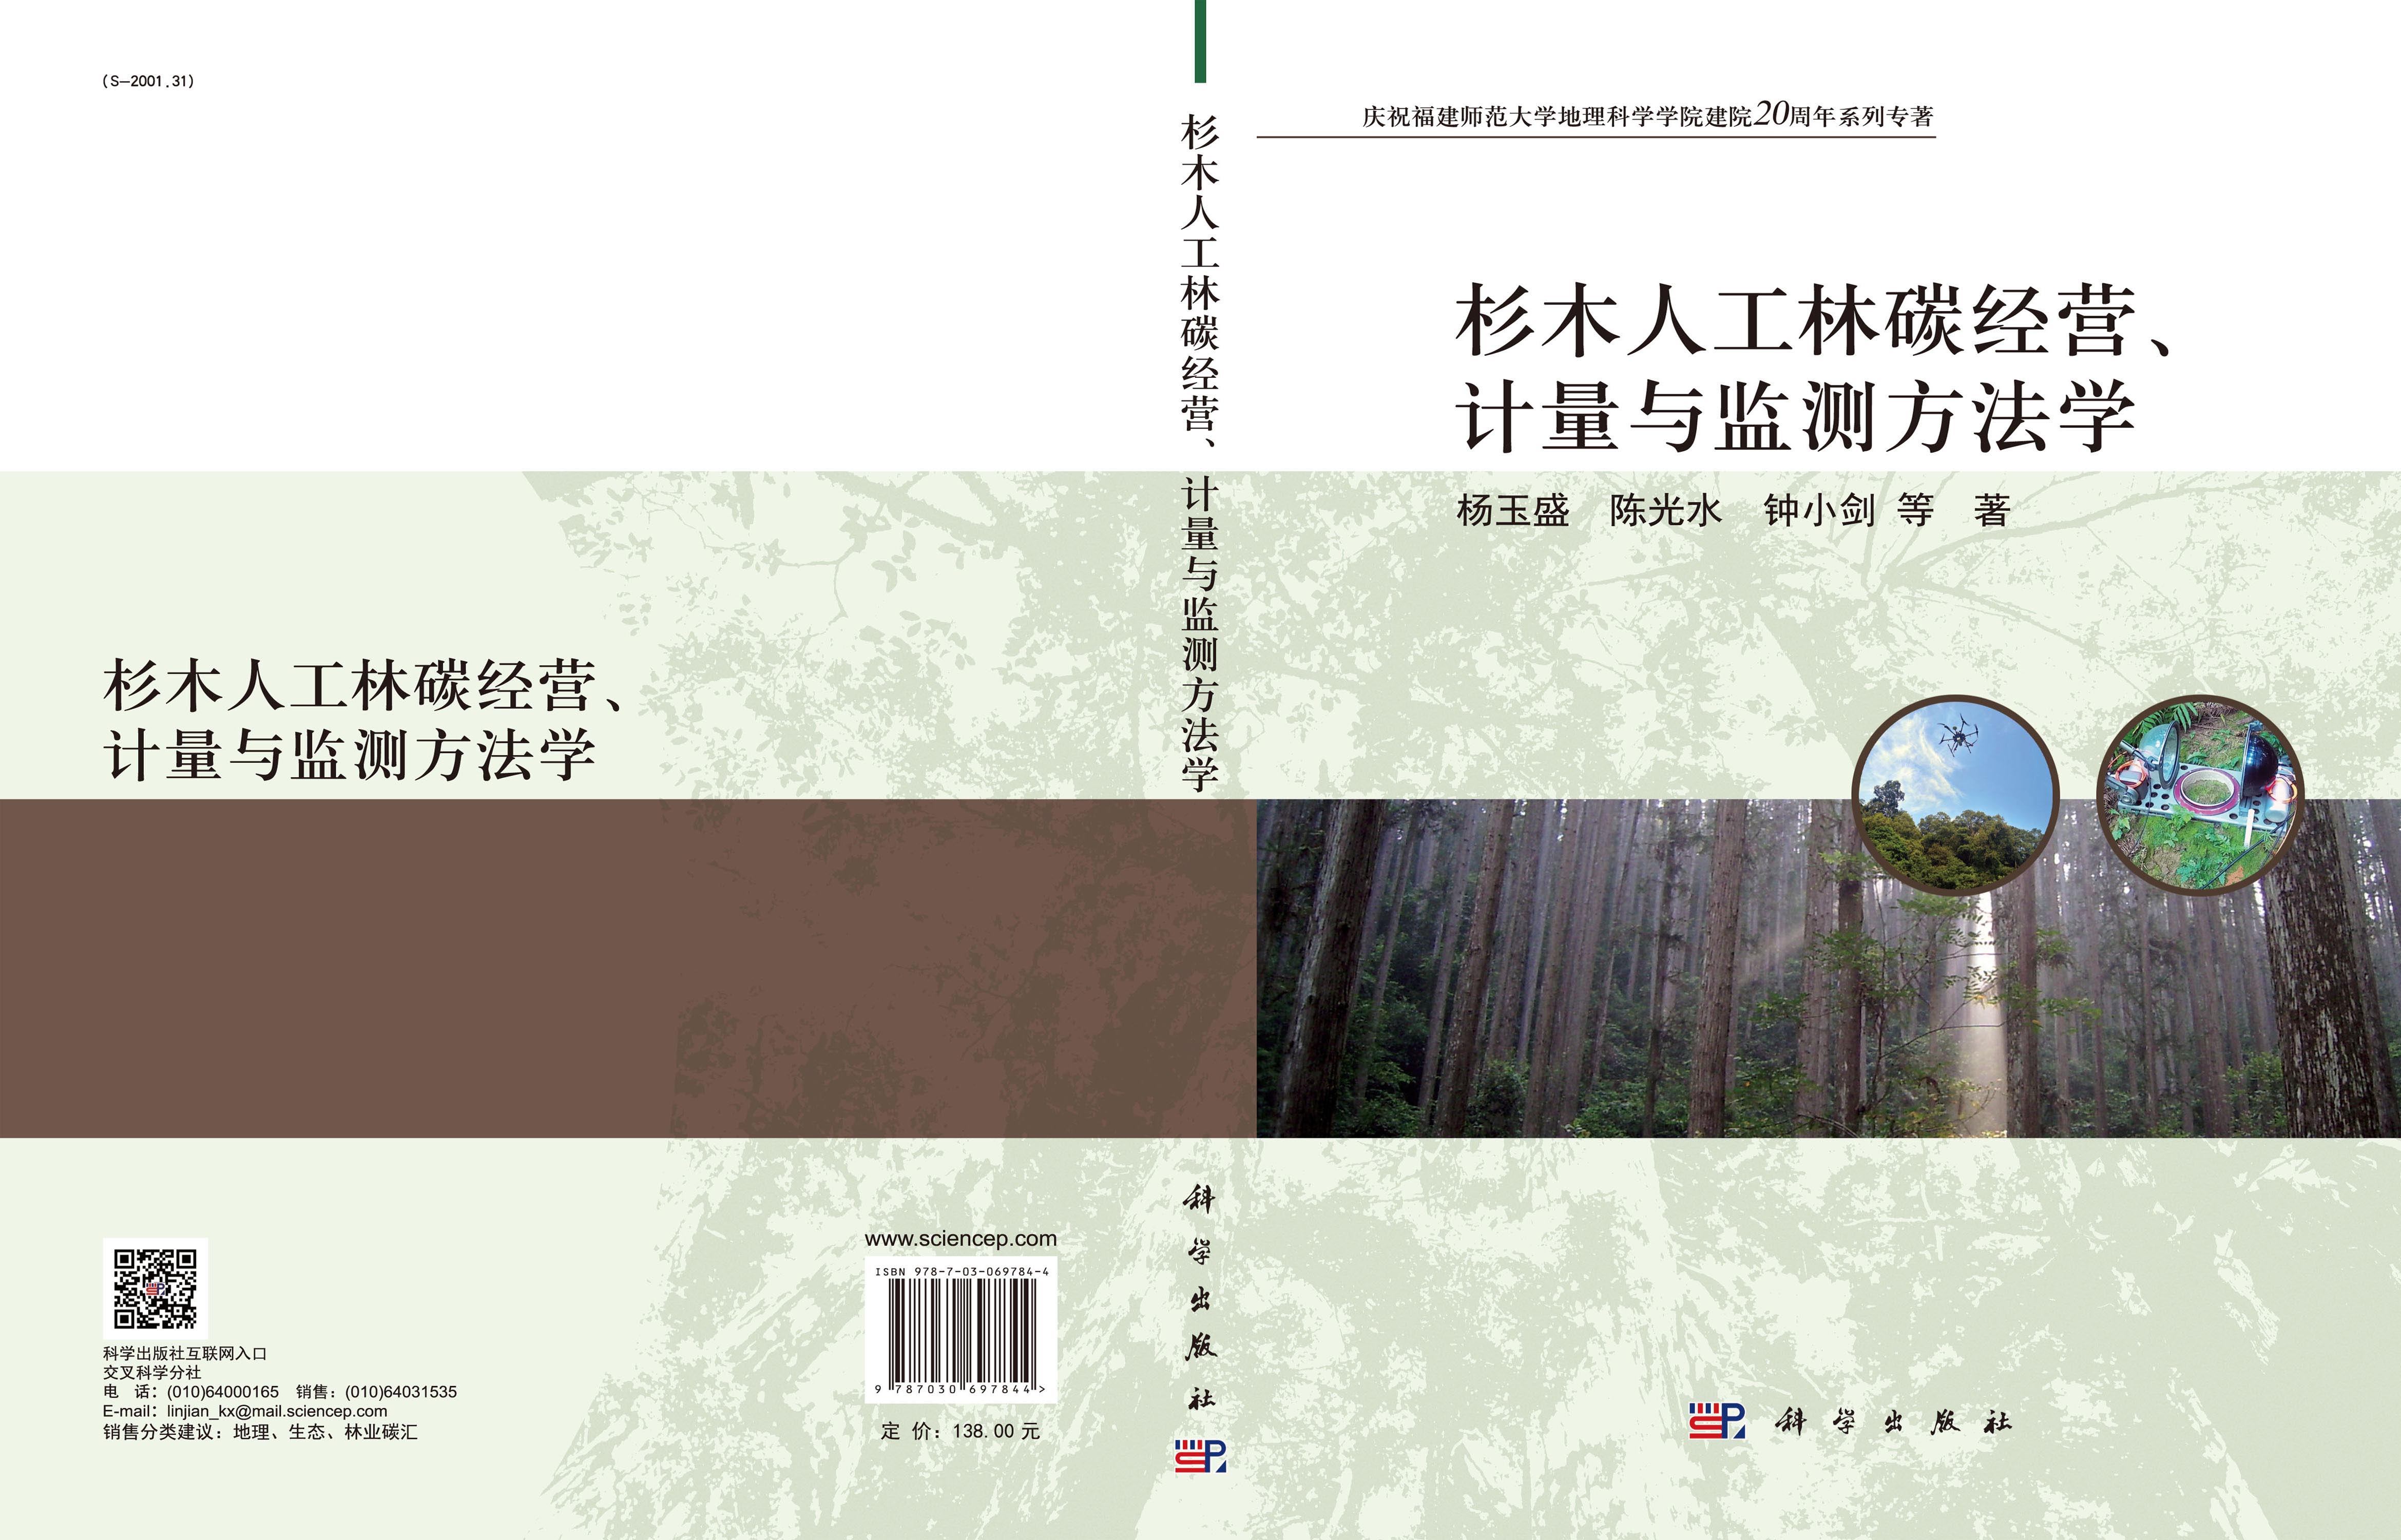 杉木人工林碳经营、计量与监测方法学